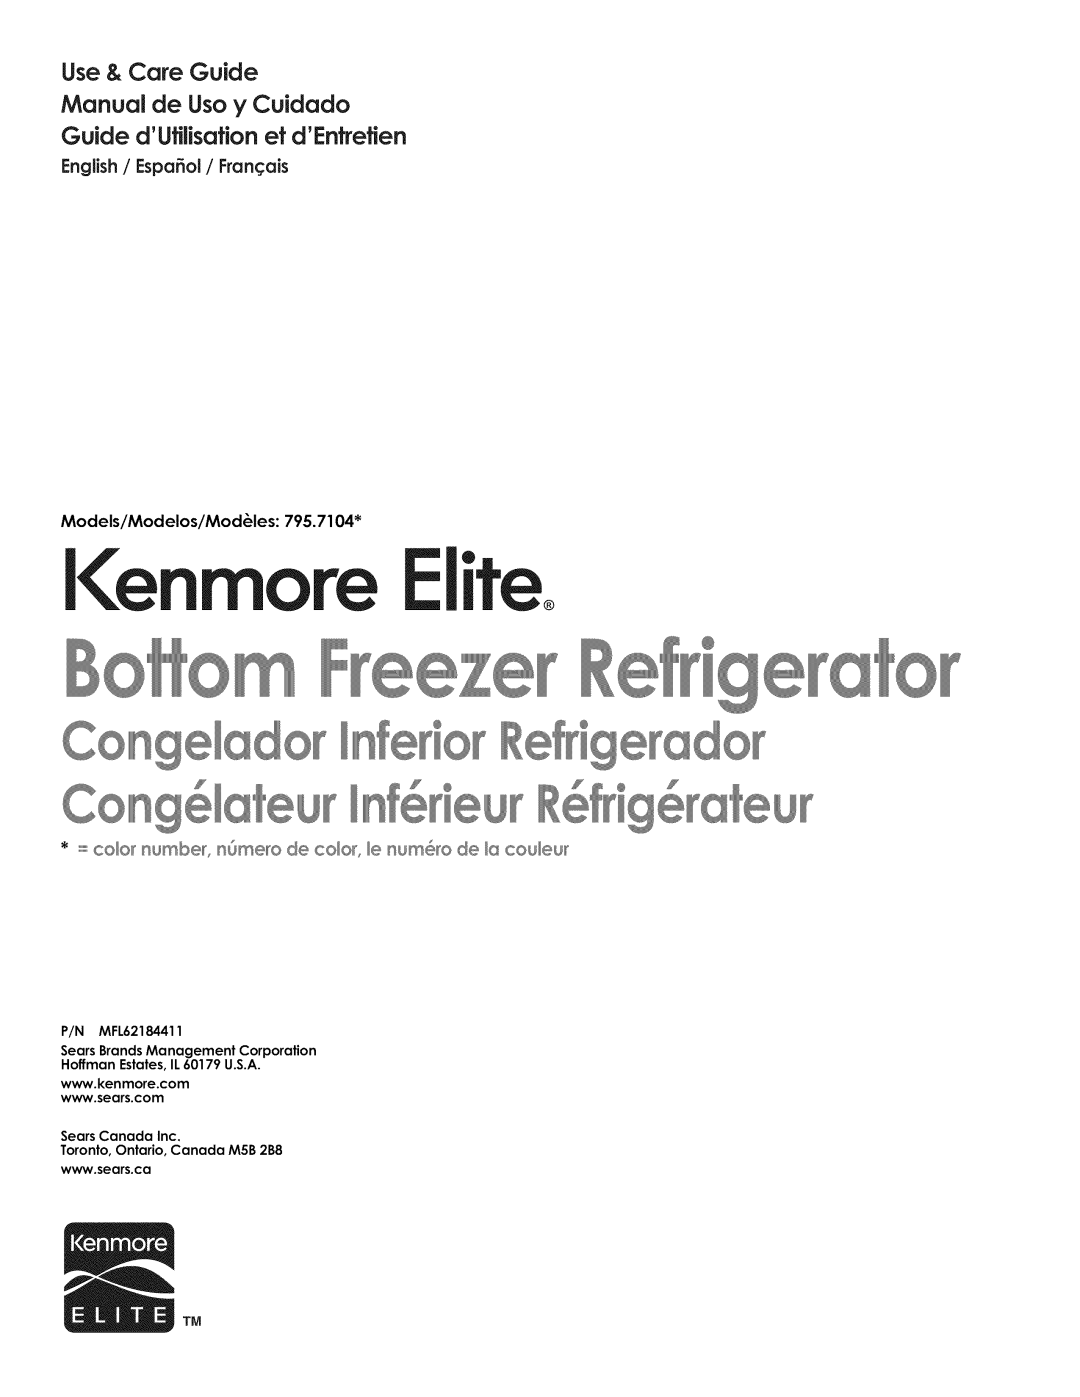 Kenmore 795.7104 manual Kenmore Elite, Use & Care Guide Manual de Uso y Cuidado, Guide dUfllisafionetdEntrefien 